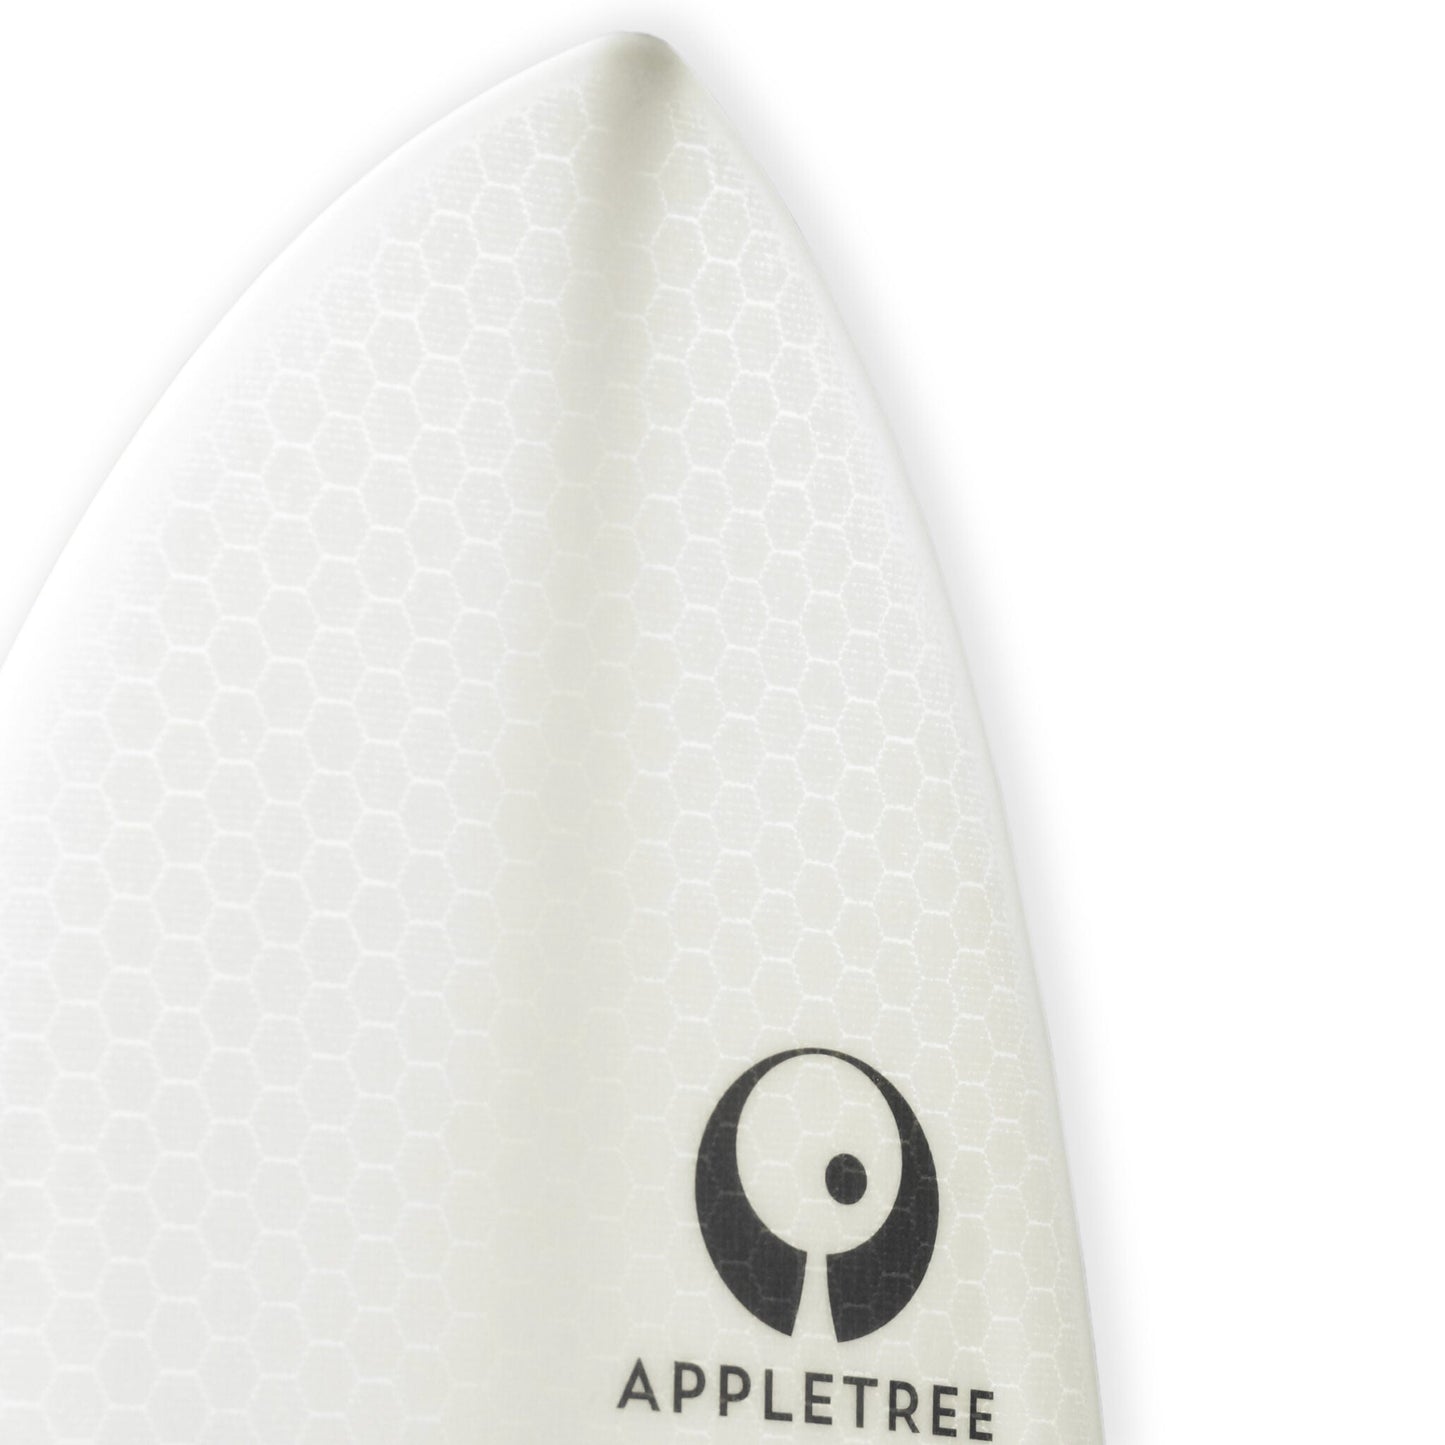 Appletree Klokhouse Noseless Custom Kite Surfboard